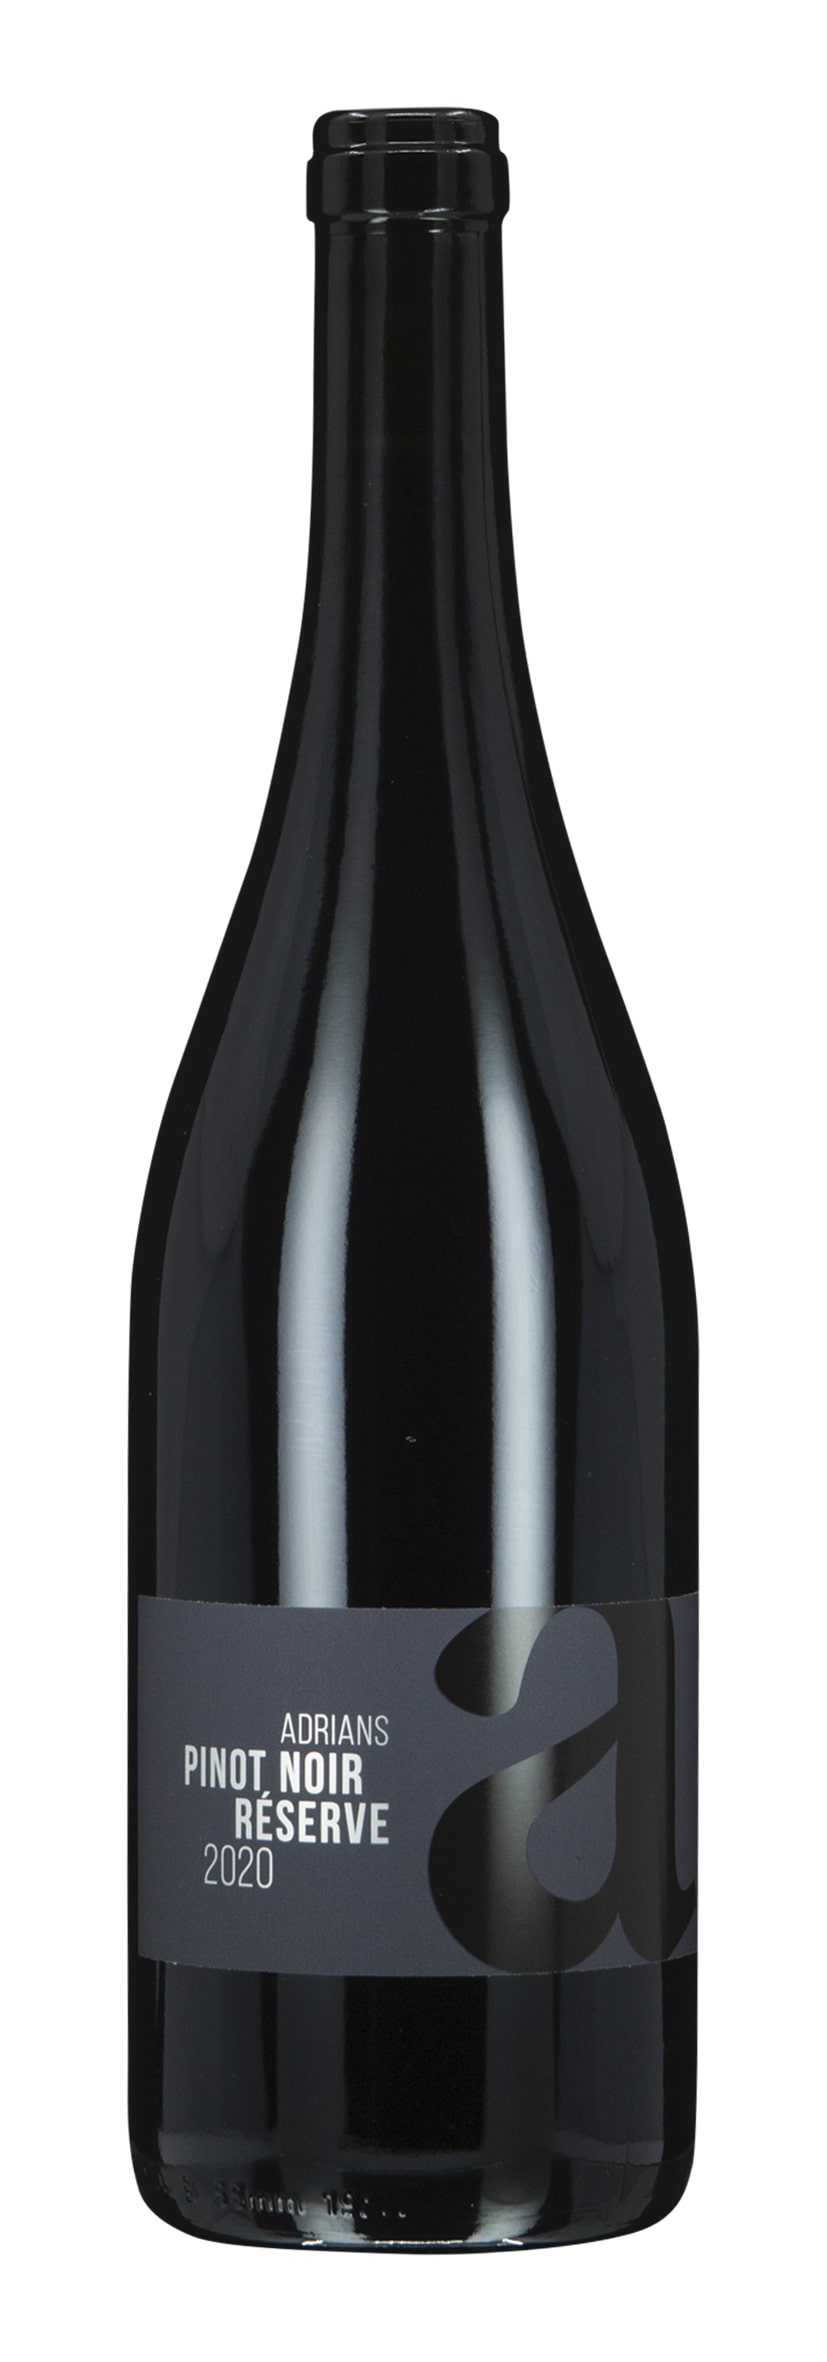 Aargau AOC Pinot Noir Réserve 2020